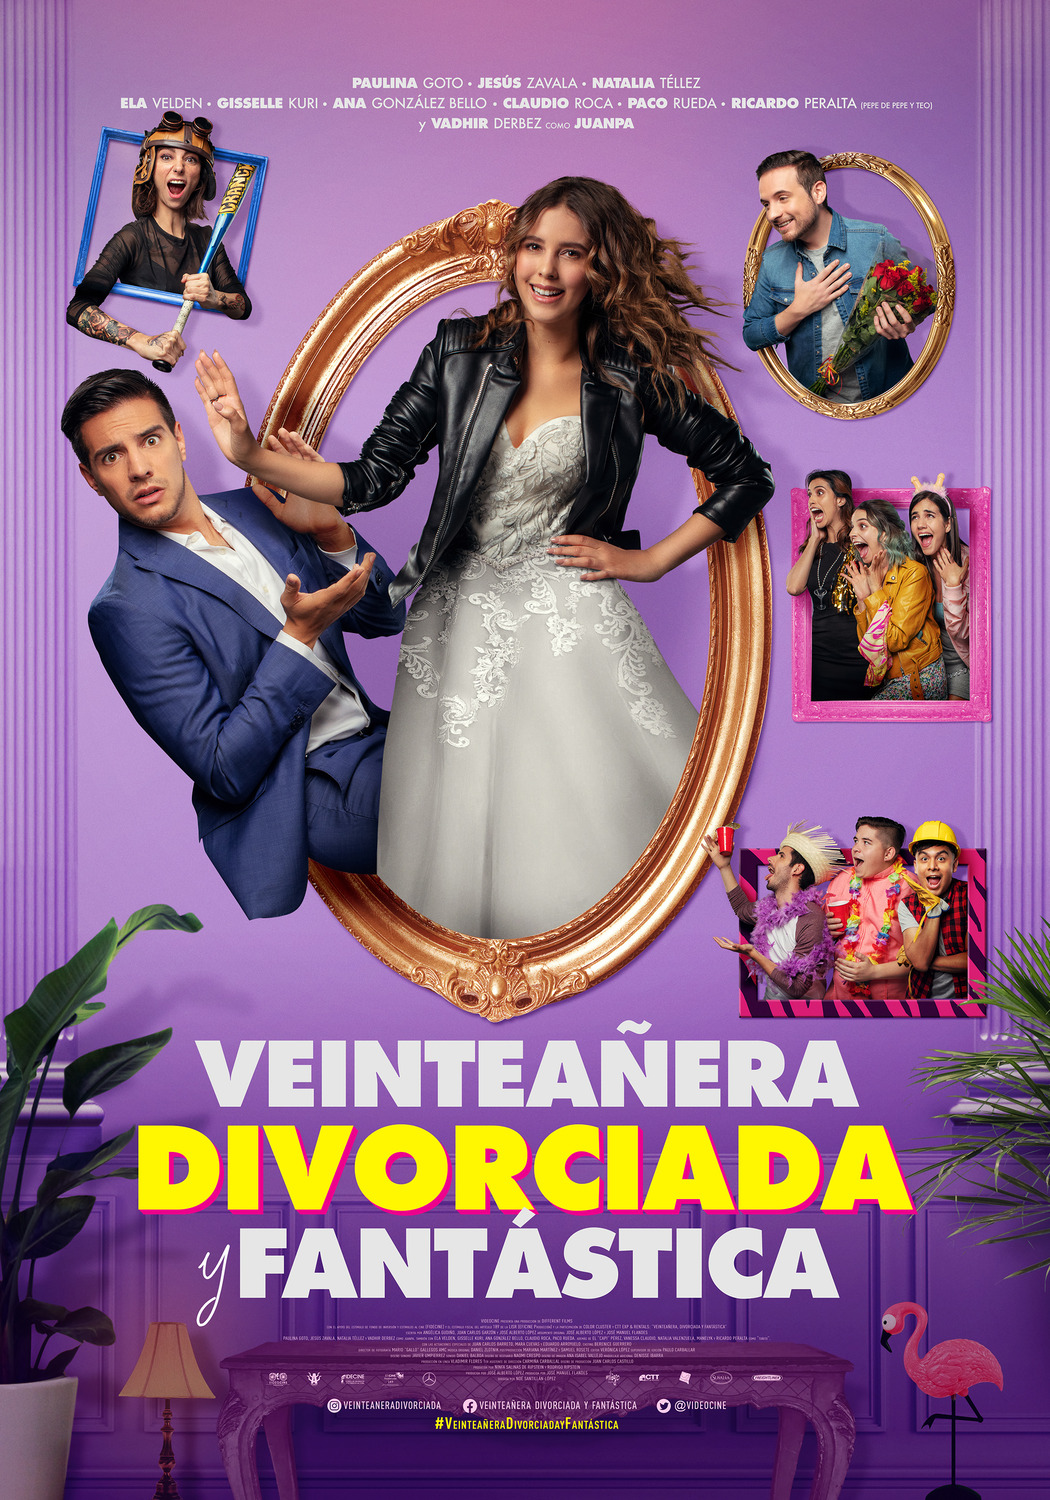 Extra Large Movie Poster Image for Veinteañera: Divorciada y Fantástica 